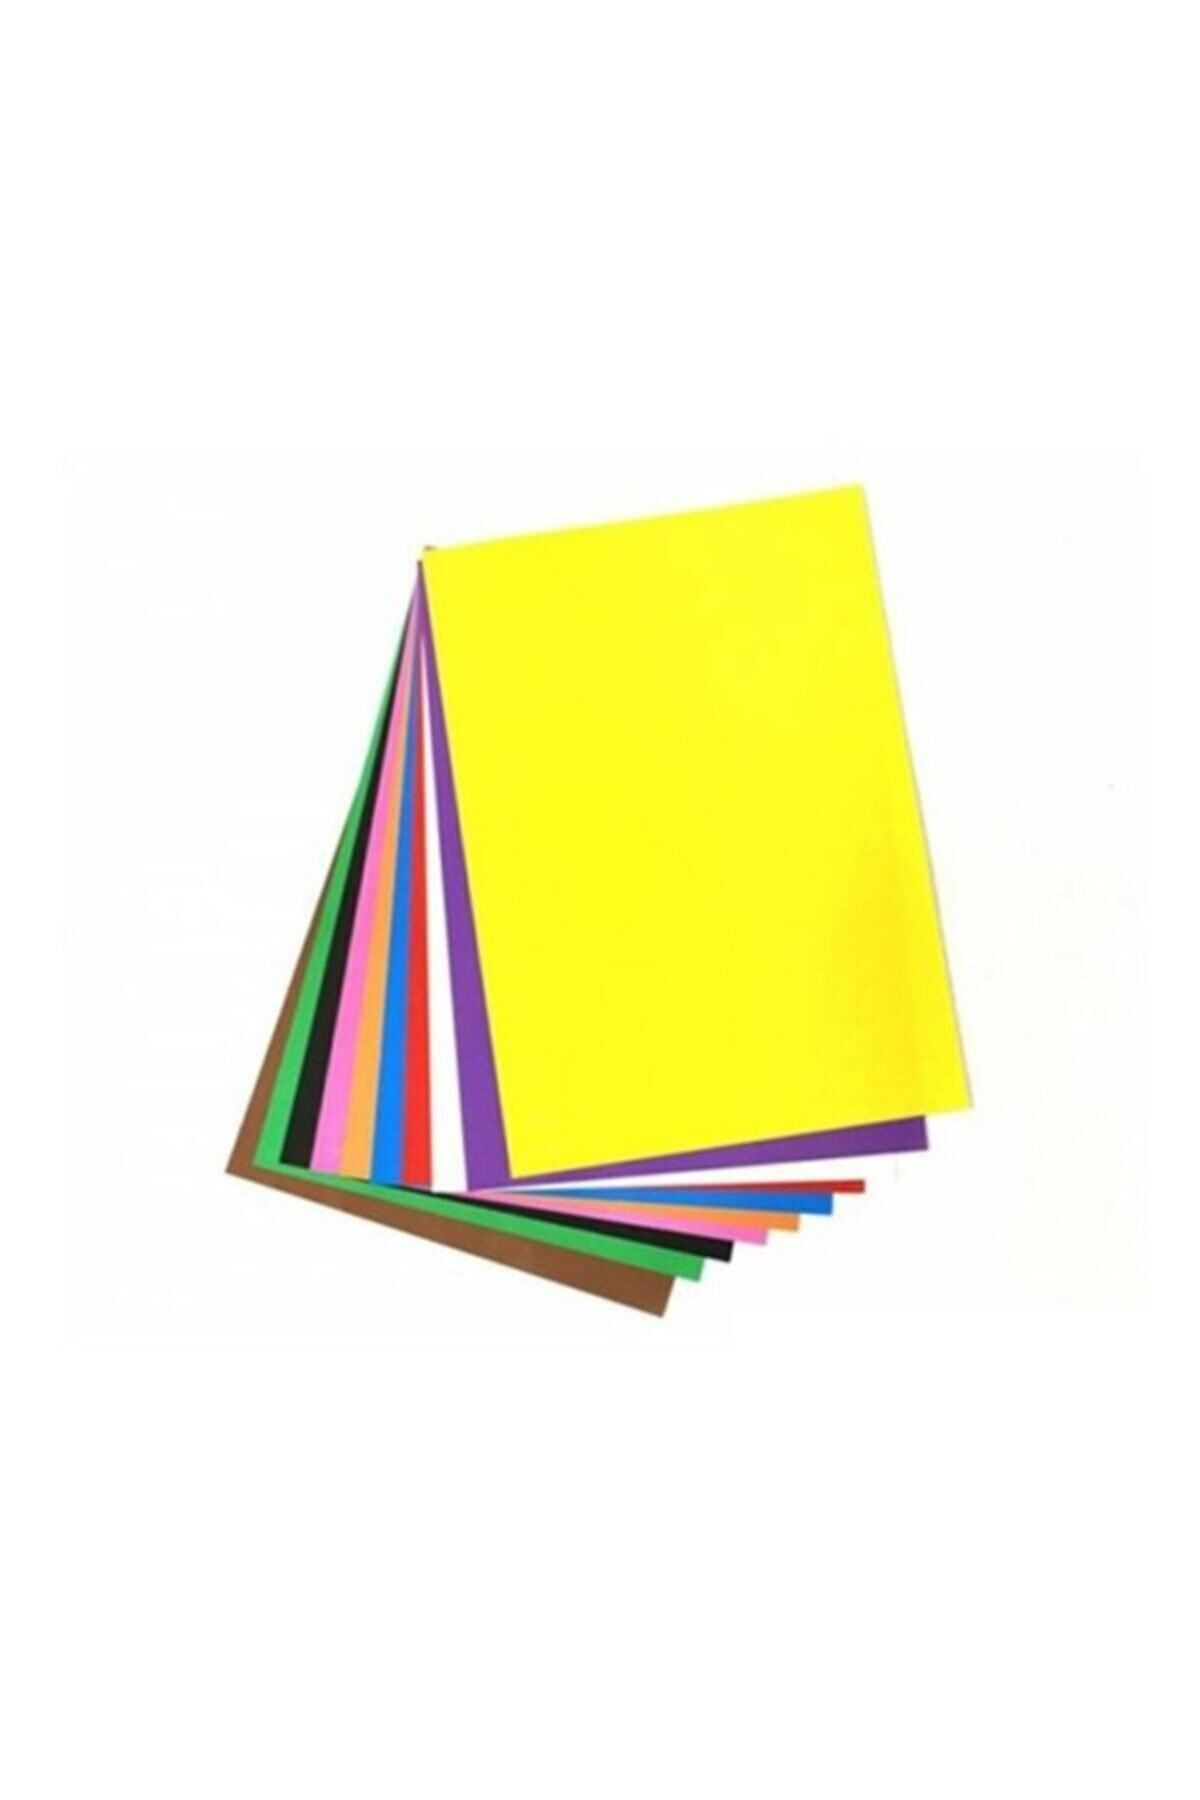 Südor San Elişi Kağıdı Karışık 10 Renk